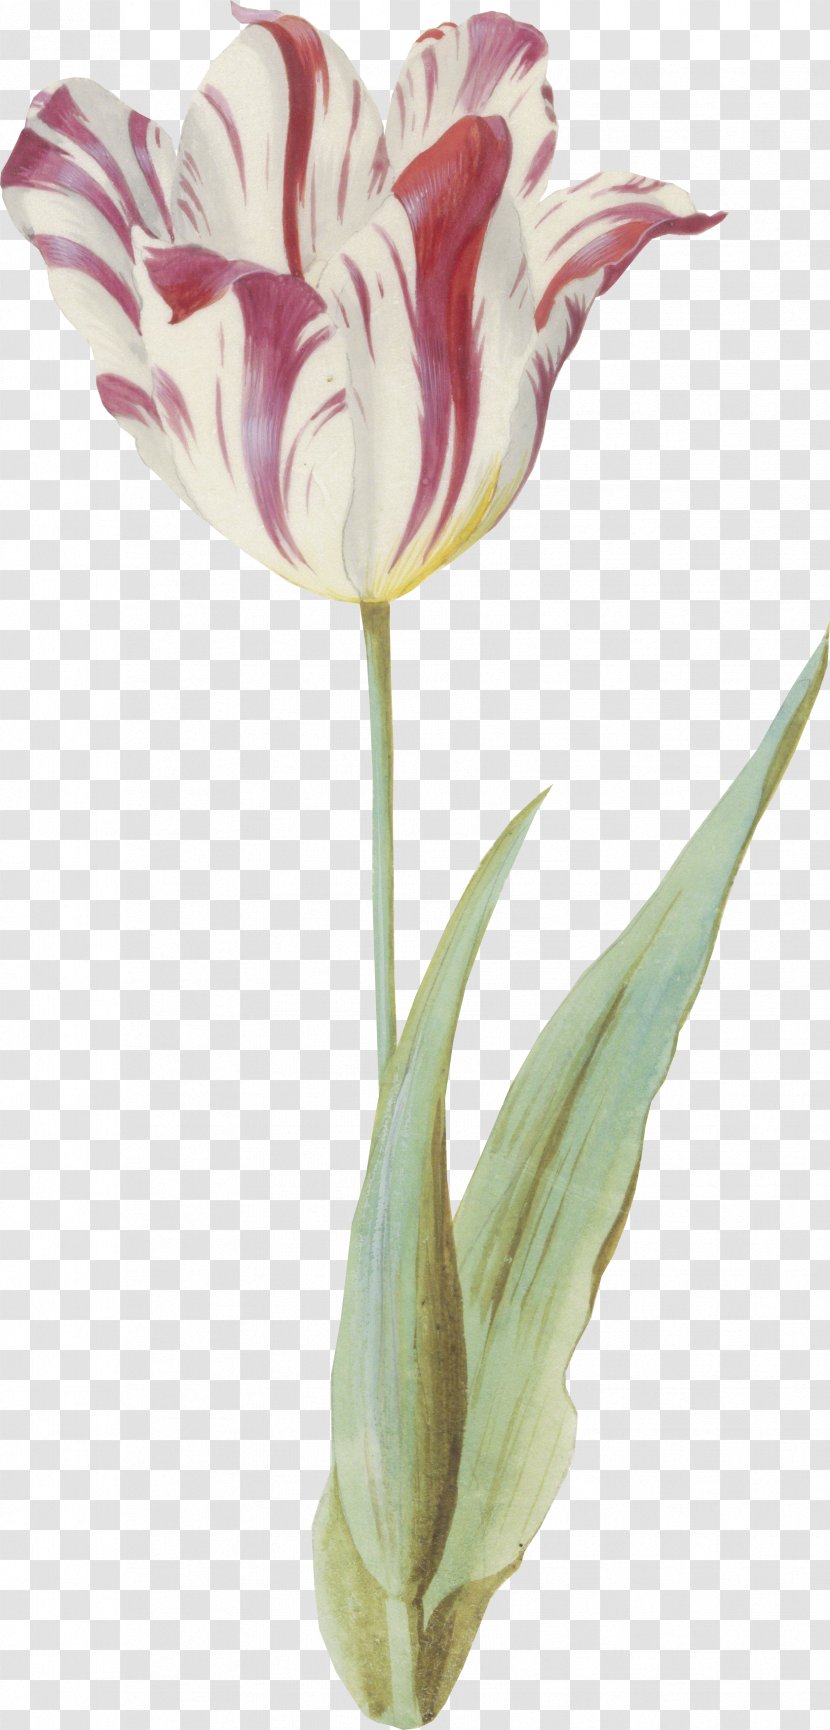 Tulip Cut Flowers Vase Plant Stem Petal Transparent PNG